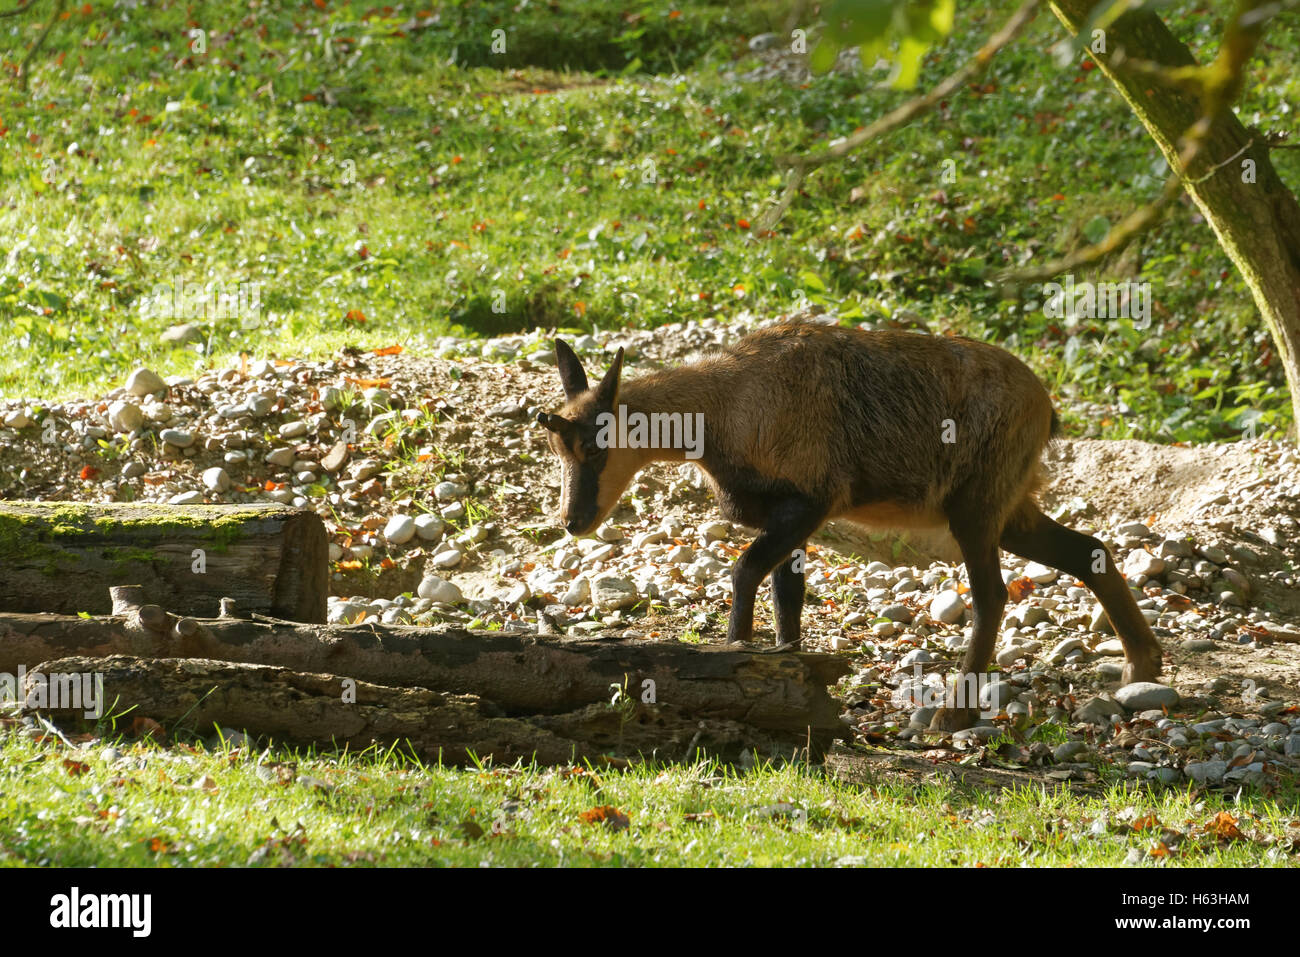 Pyrenäen-Gämsen, Rupicapra Pyrenaica, ist eine Ziege-Antilope, die in den Pyrenäen, kantabrischen Gebirge und Apennin Berg lebt Stockfoto